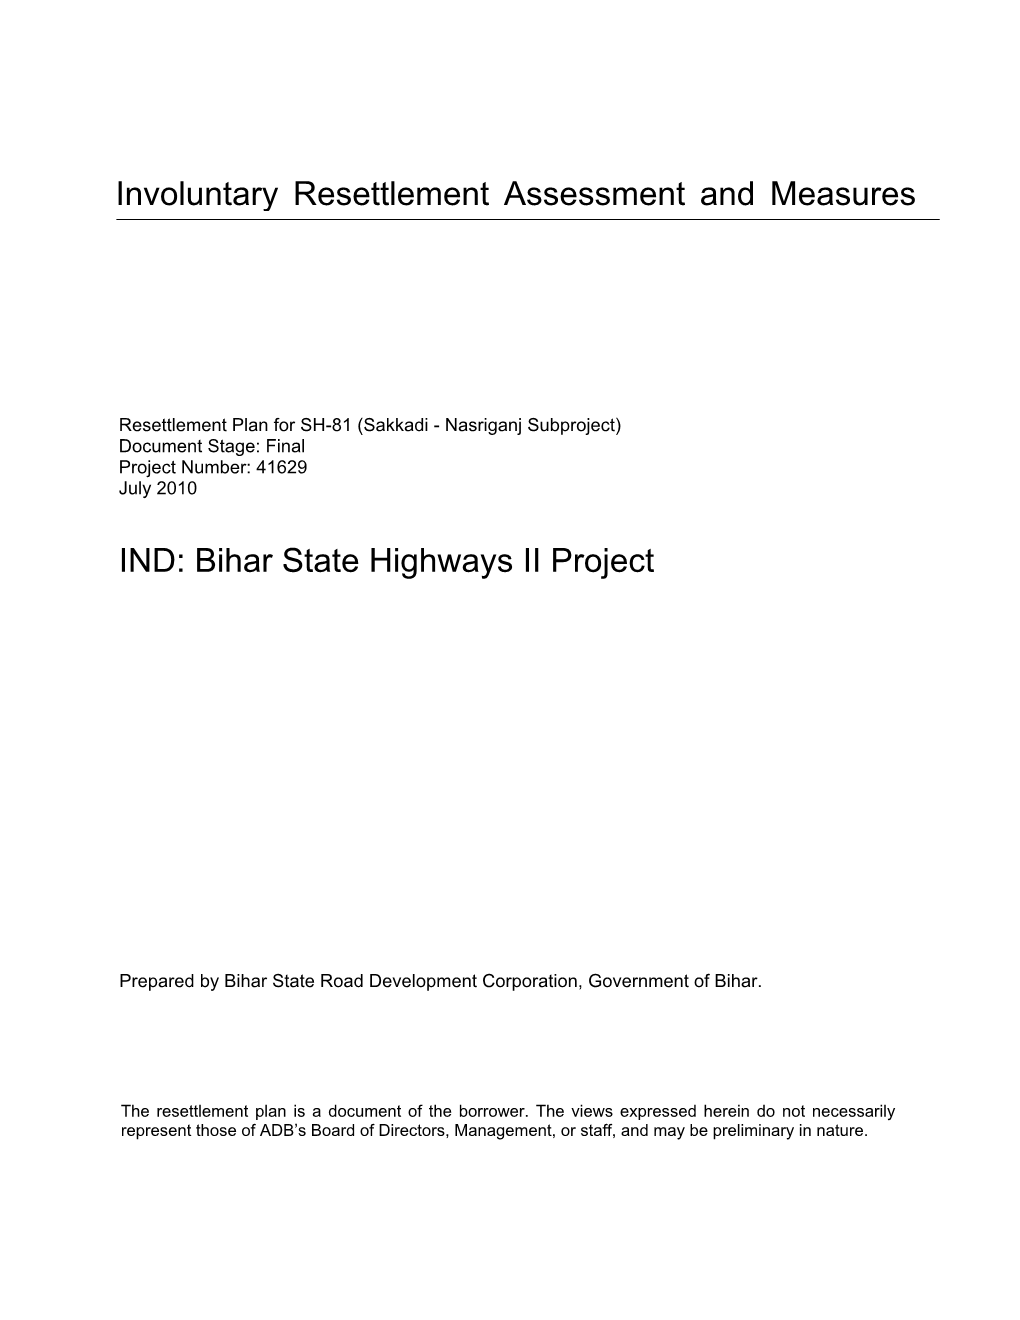 IND: Bihar State Highways II Project